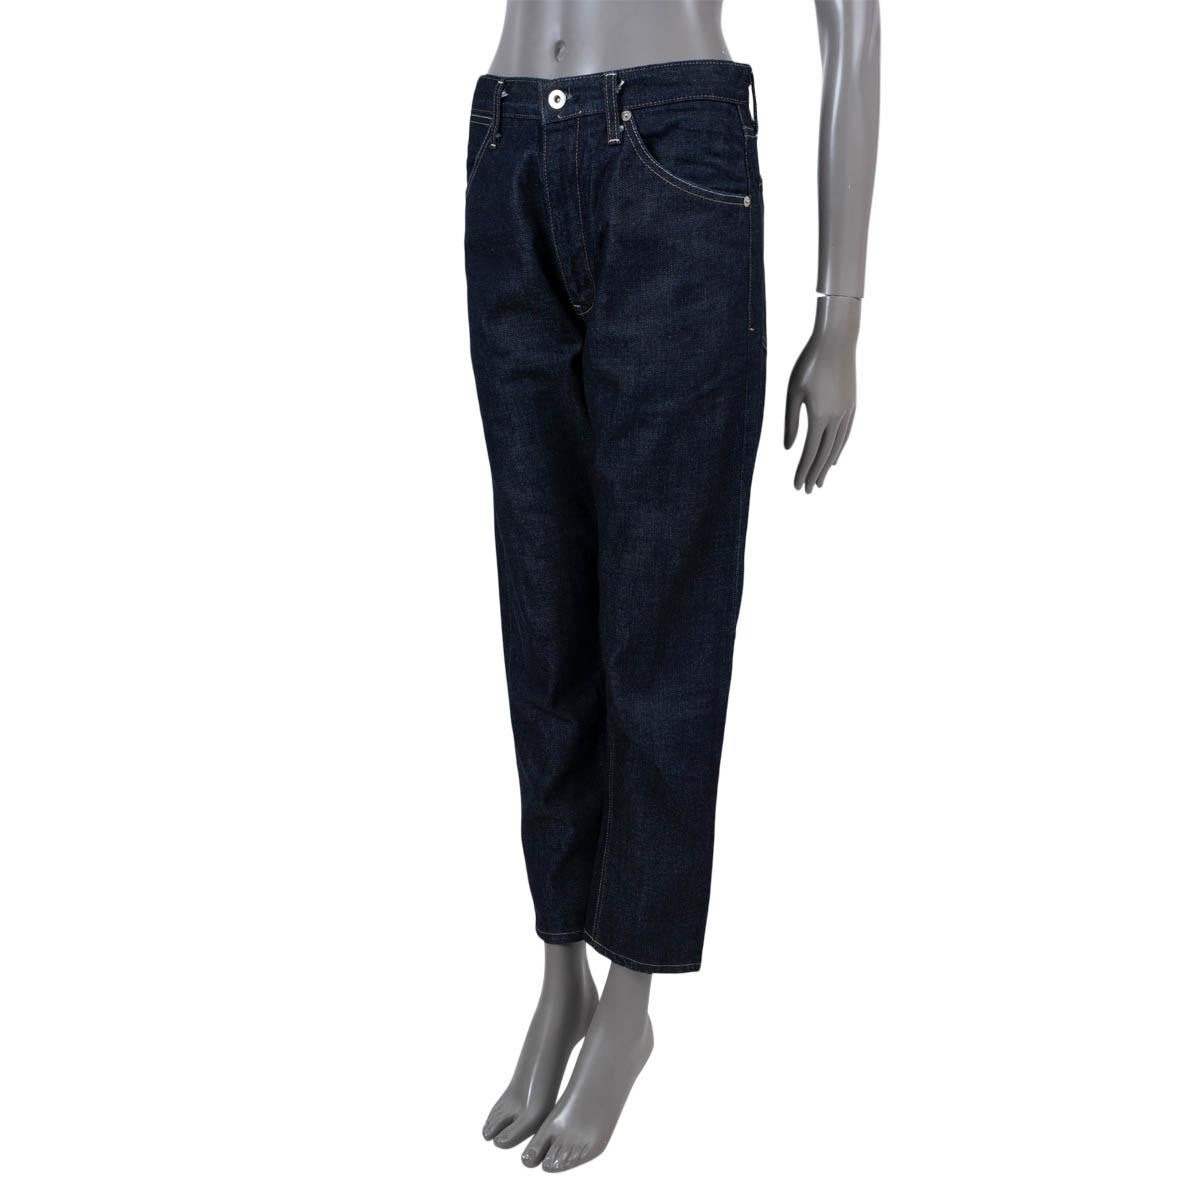 100% authentische Jil Sander+ Jeans mit hohem, geradem Bein, aus indigoblauer Baumwolle (100%). Mit Eingrifftaschen auf der Vorderseite, aufgesetzten Taschen auf der Rückseite und Gürtelschlaufen. Mit Reißverschluss und Knopf auf der Vorderseite zu